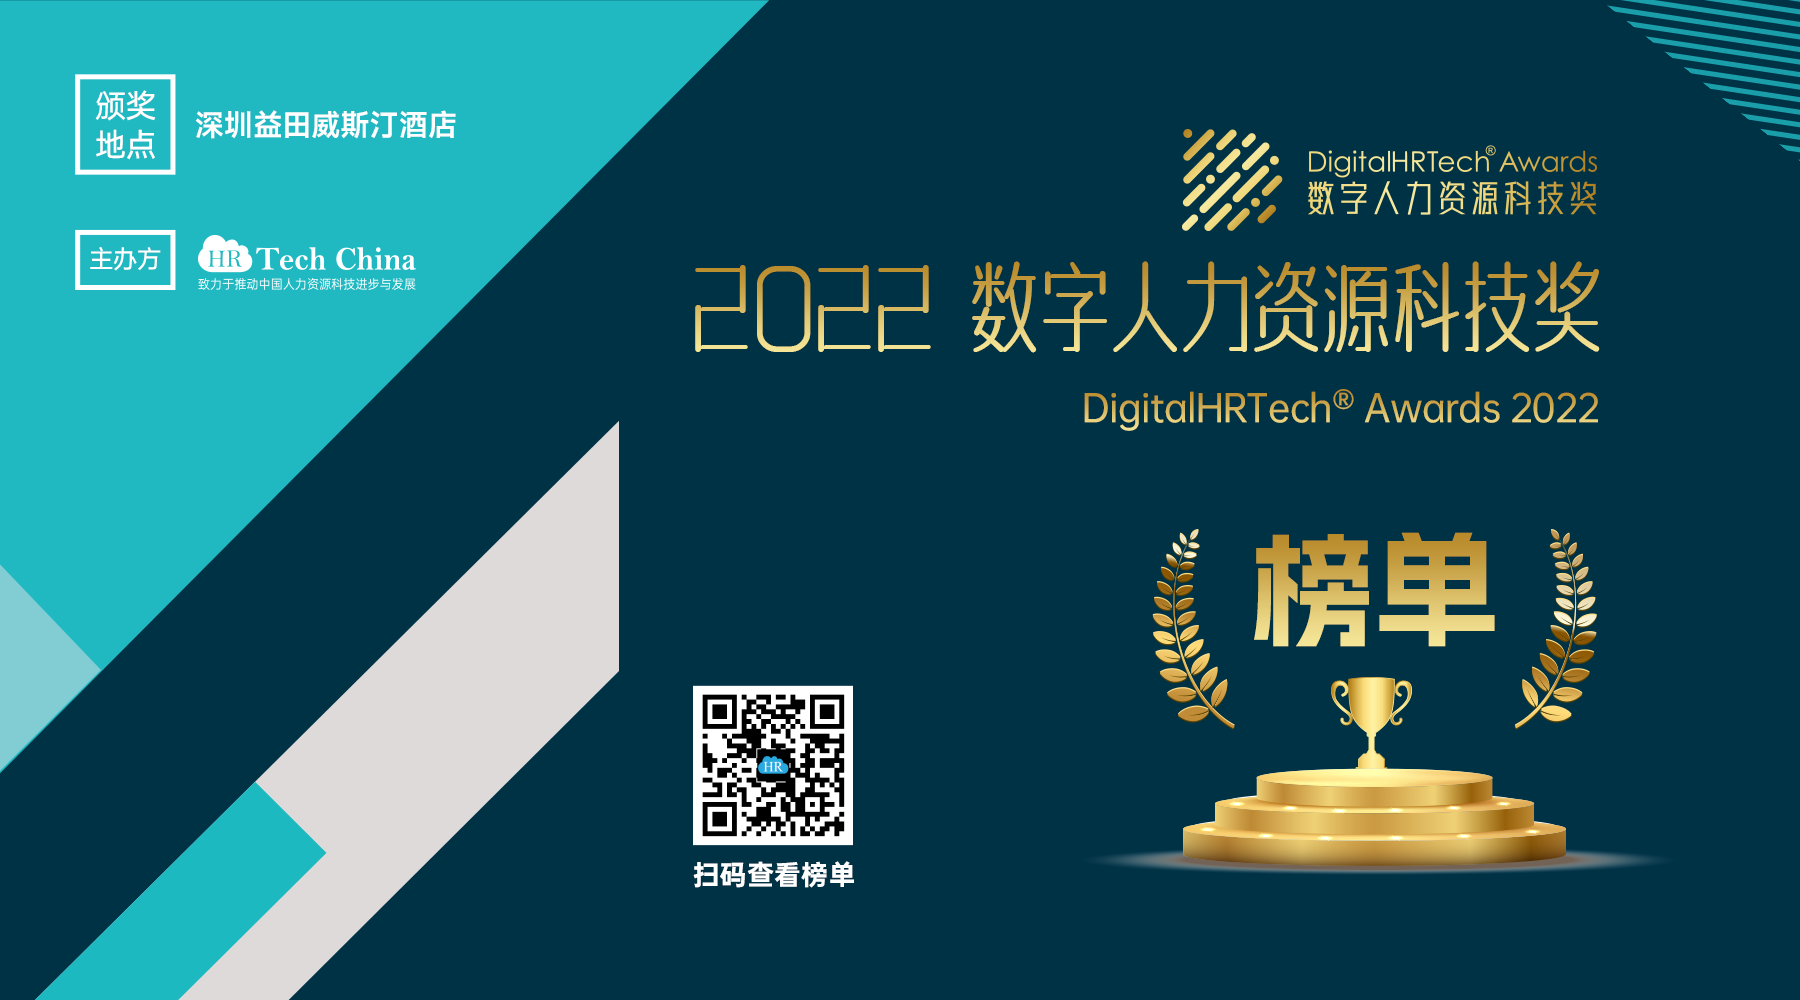 【祝贺】2022数字人力资源科技奖（DigitalHRTech® Awards 2022）获奖榜单揭晓，祝贺获奖组织和团队！